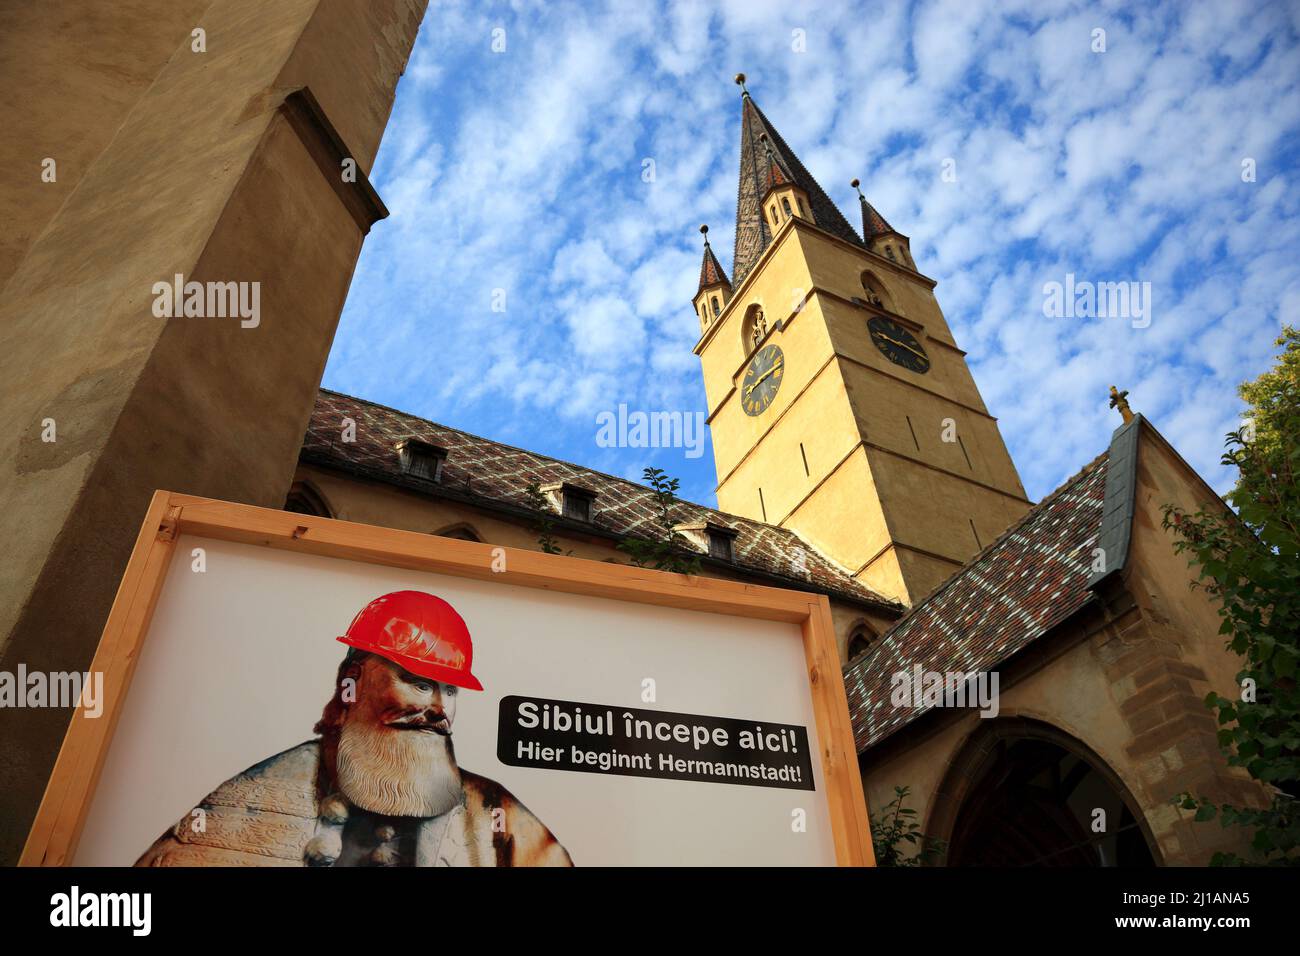 Zweisprachiges Baustellenschild. Hier Beginnt Hermannstadt. An der eveangelischen Kirche in der Altstadt von Sibiu, Rumänien / Bilingual constructio Foto Stock